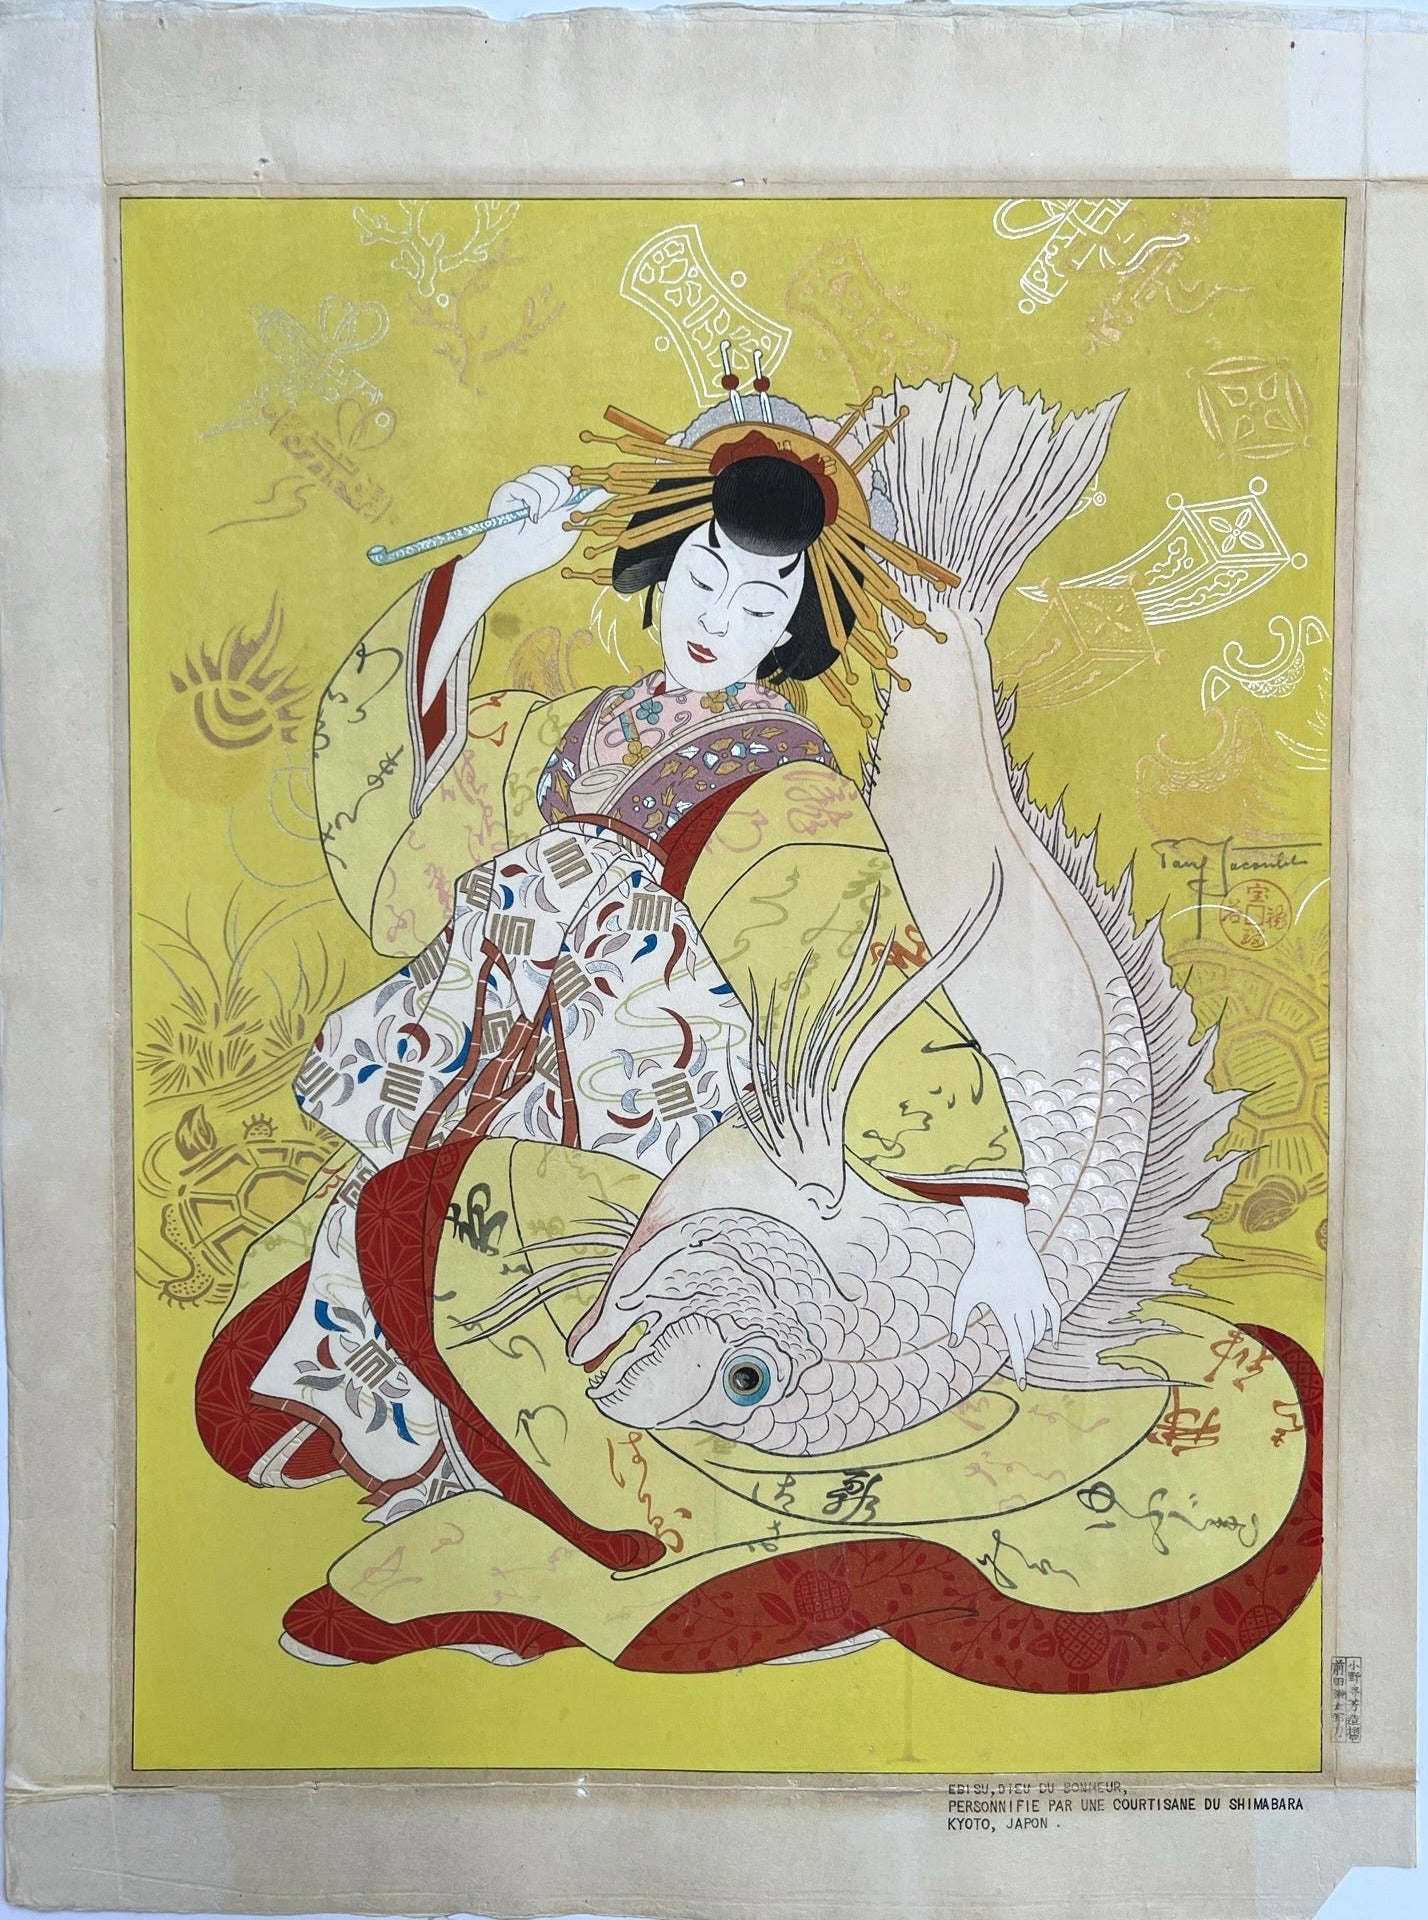 estampe japonaise de Paul jacoulet Ebisu avec une carpe koi sous le brasreprésenté par une courtisane